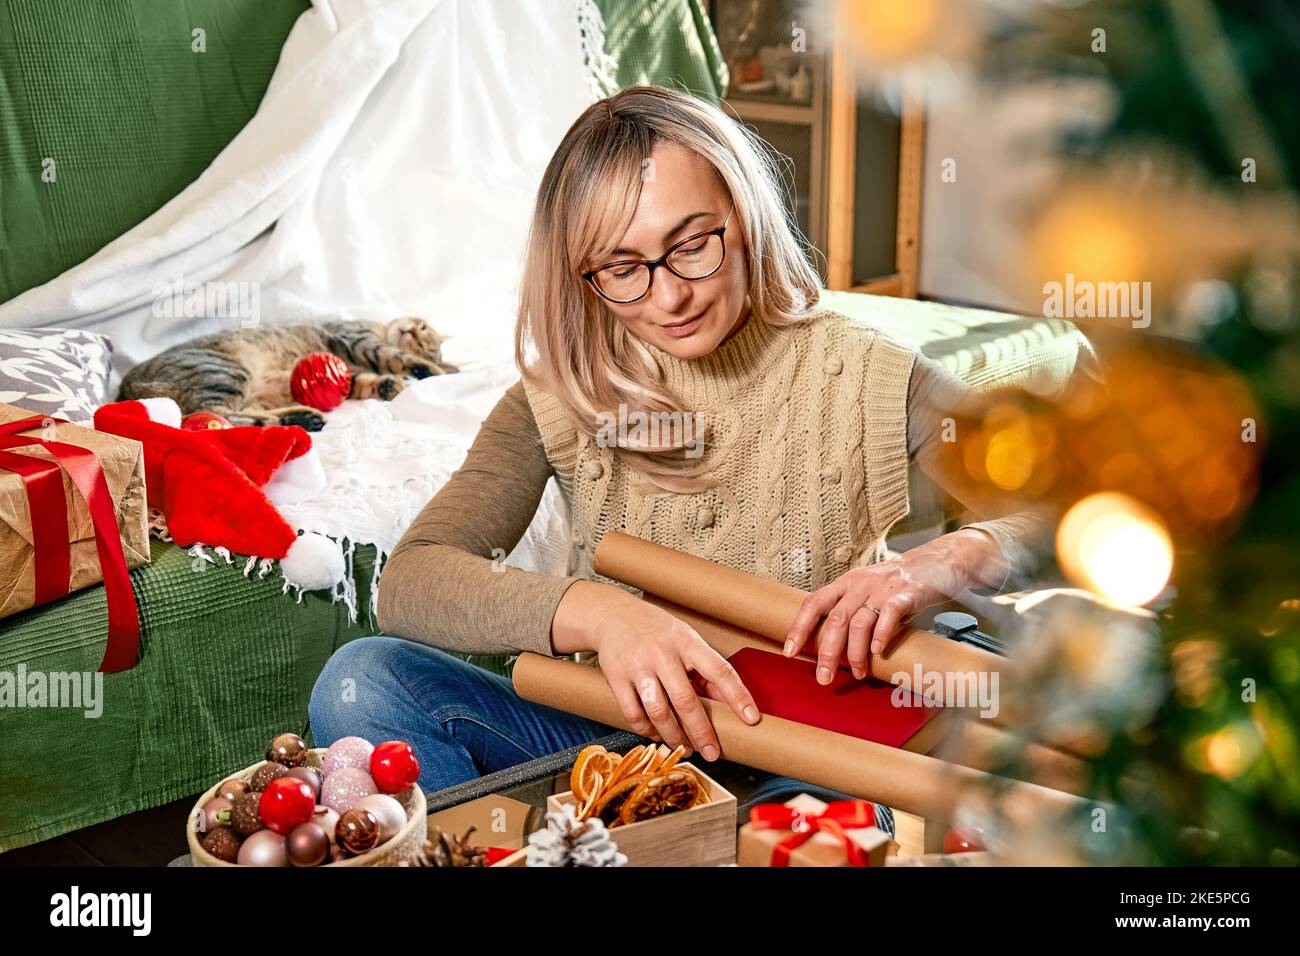 Geschenkverpackung von weihnachtsgeschenken. Blonde Frau wickelte ein Buch als Geschenk in recycelte Karte und dekorierte es mit getrockneten Orangen und Tannenzweigen in der Nähe der Christm Stockfoto